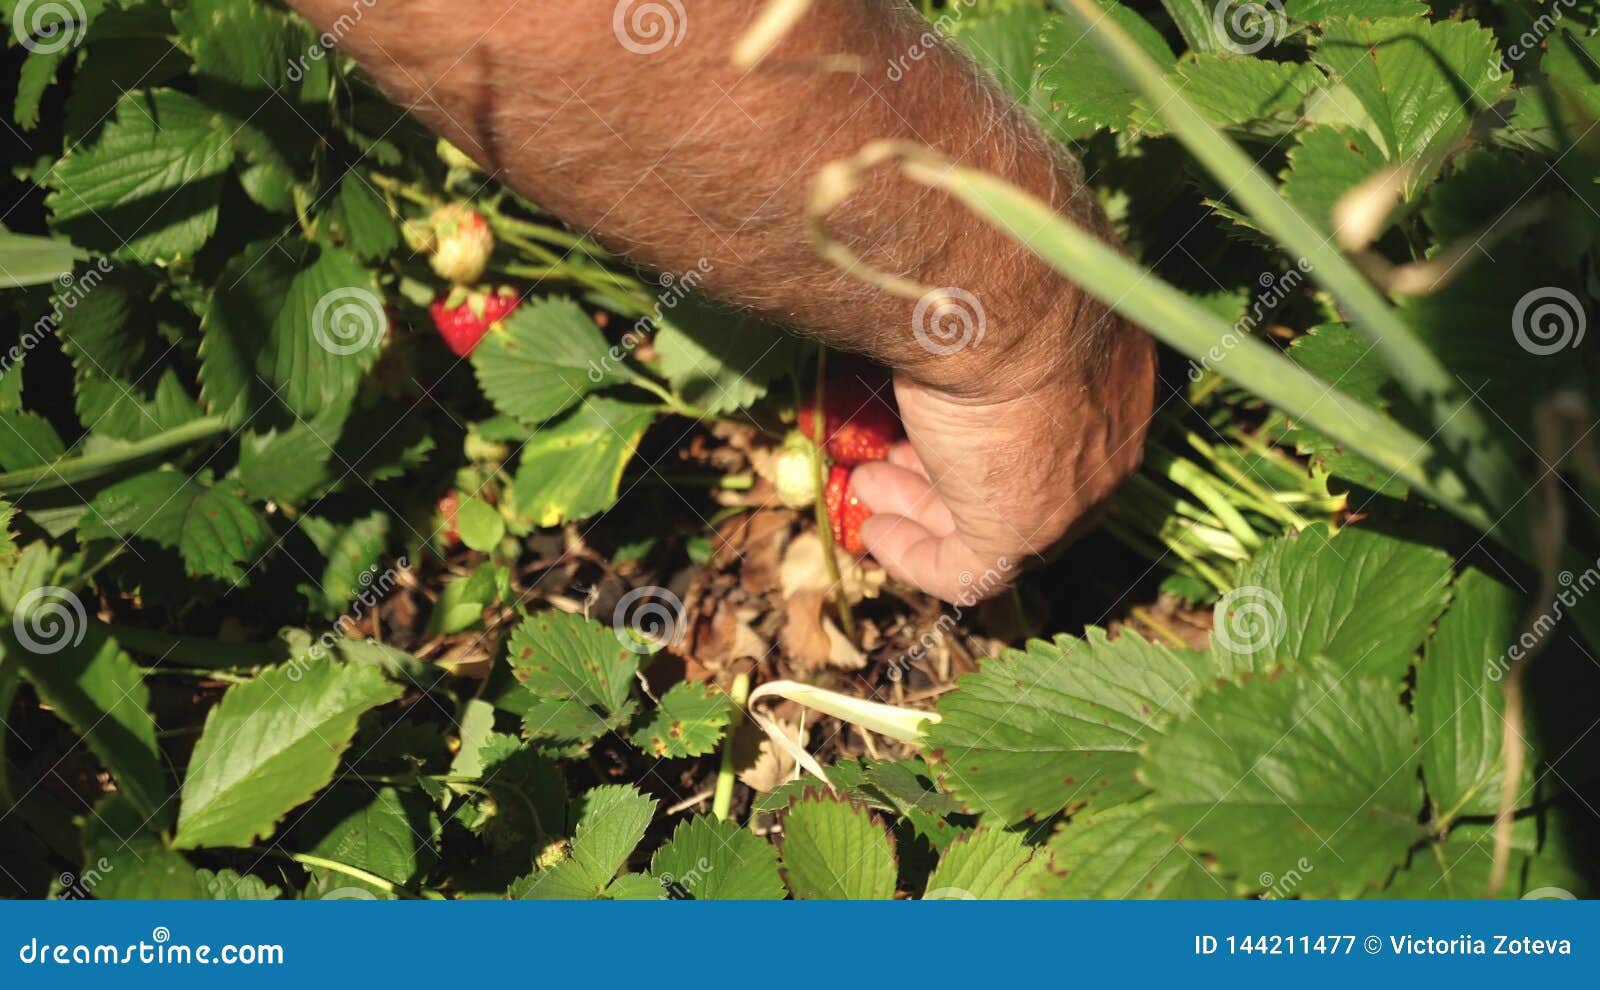 La main masculine montre les fraises rouges sur les buissons un agriculteur moissonne une baie mûre la main du jardinier montre d. La main masculine montre les fraises rouges sur les buissons récoltes d'agriculteur une baie mûre la main du jardinier montre des fraises en été dans le jardin